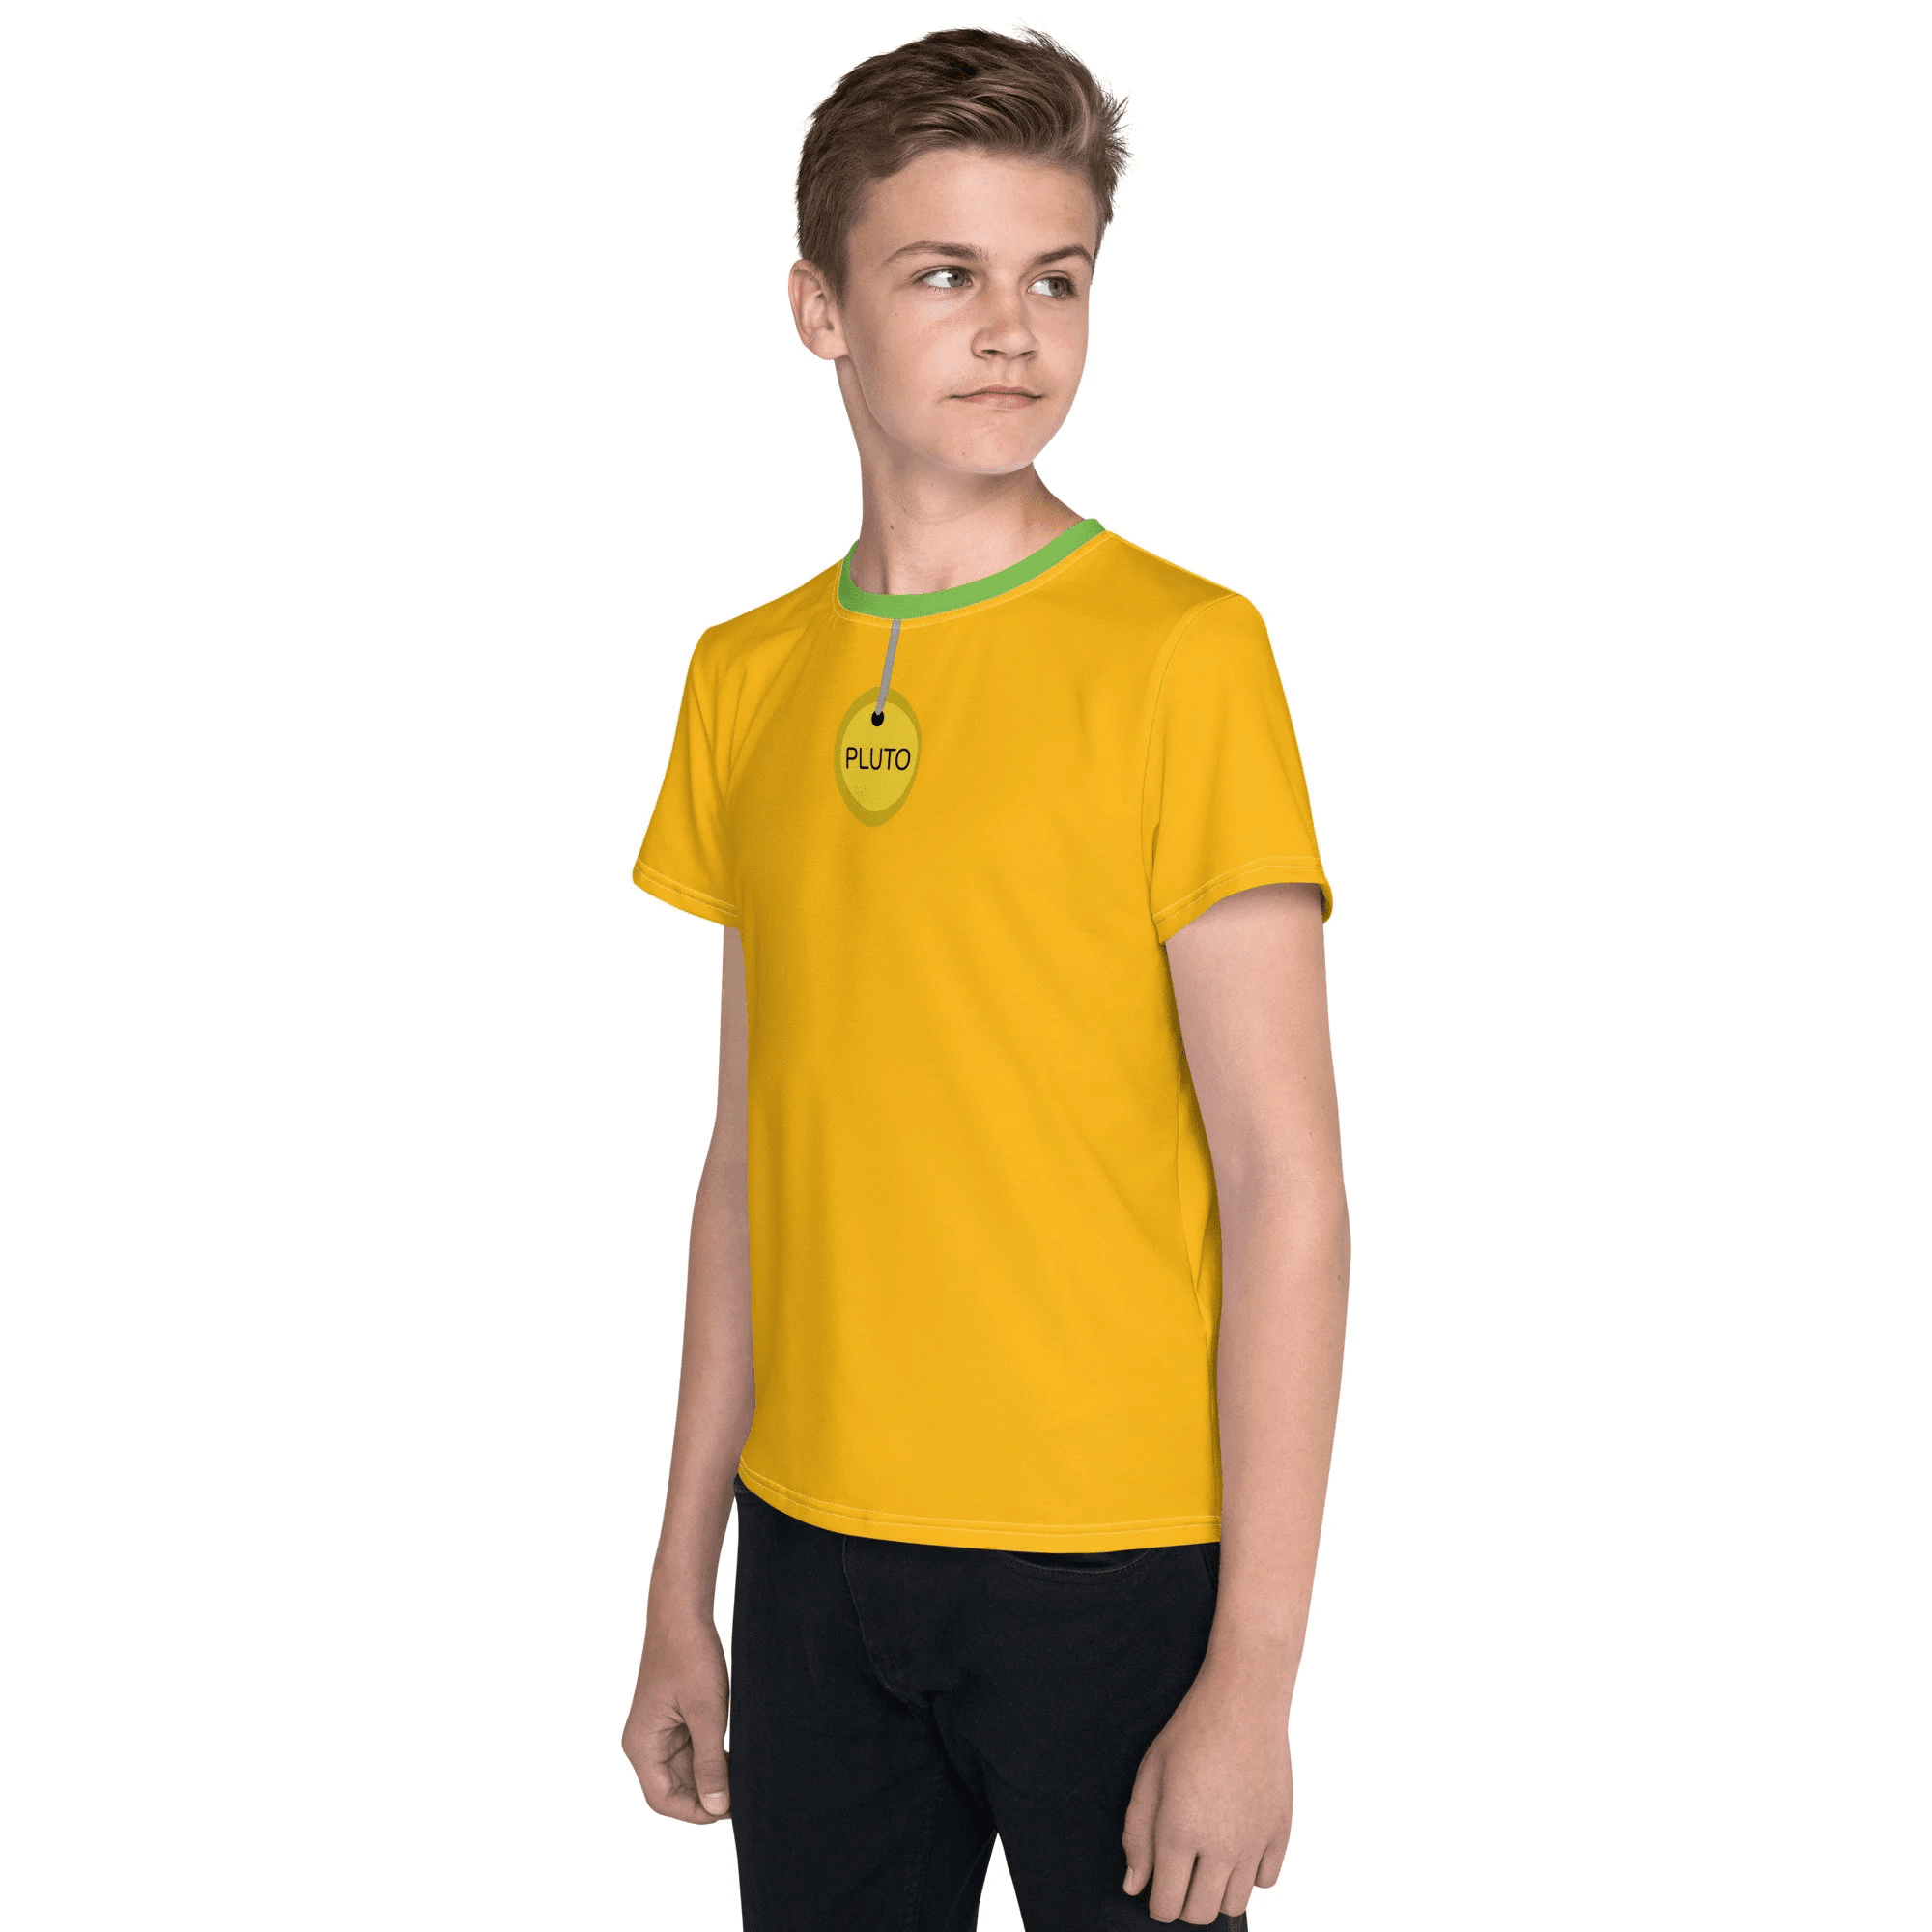 Kids Pluto T-Shirt - Prince Top - Disney Pluto Tshirt